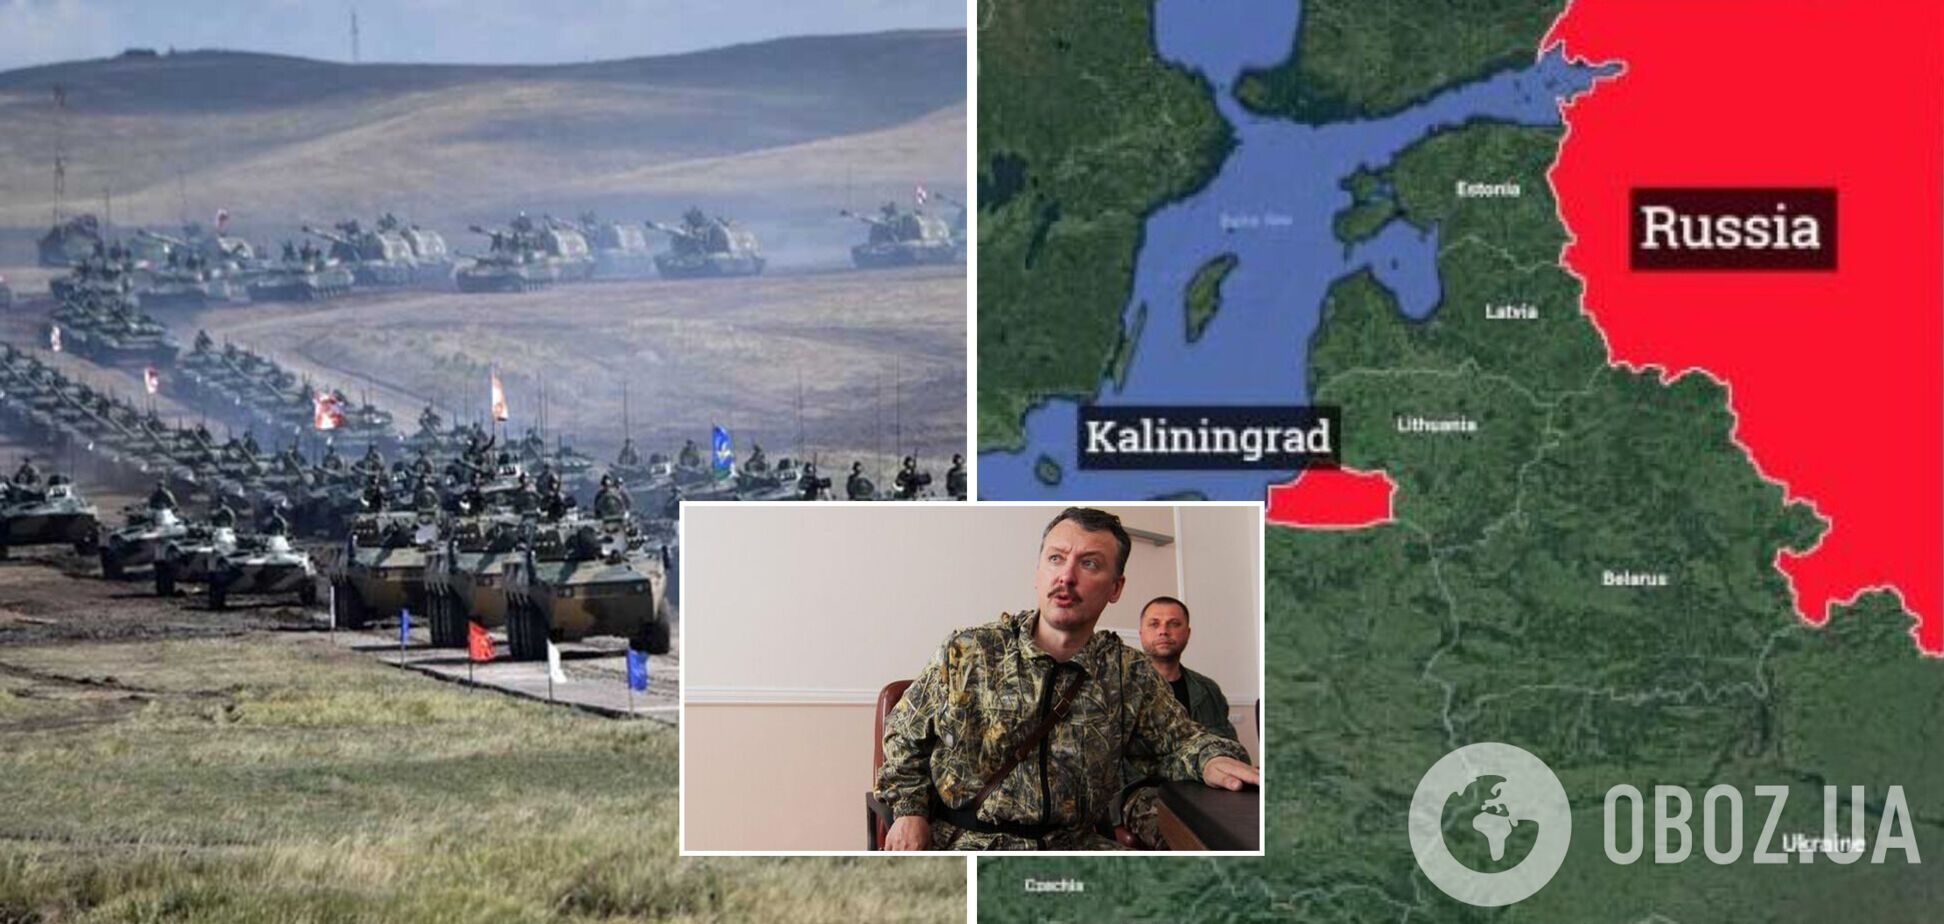 Гиркин заявил, что если НАТО вступит в войну, то Россия не сможет удержать Калининград